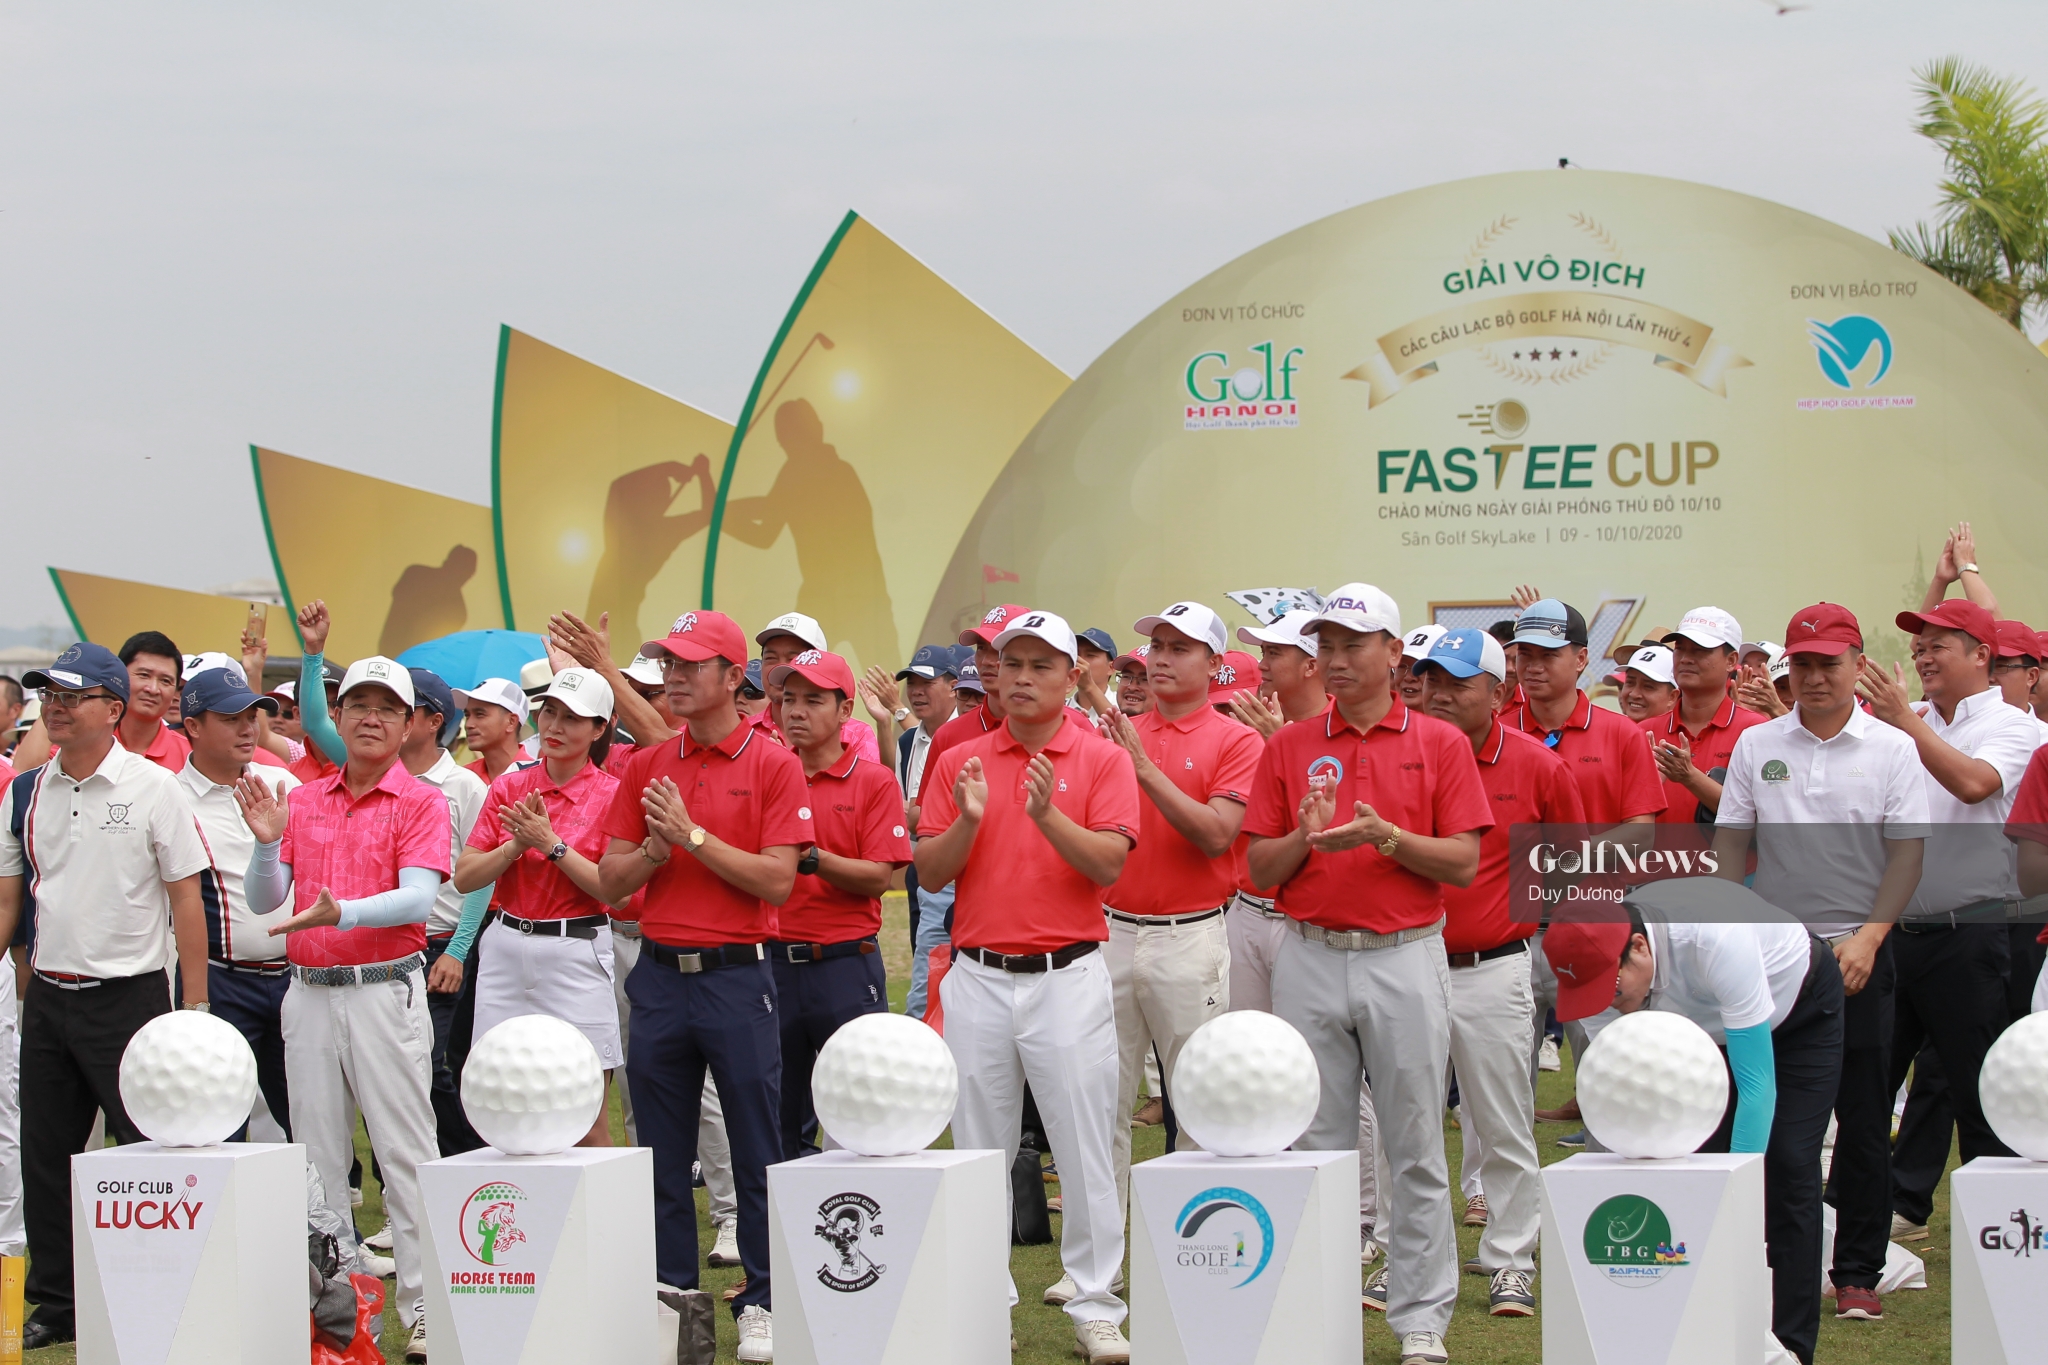 Chuyện golf số 44: Giải Vô địch các Câu lạc bộ golf Hà Nội lần thứ 4 – Những ấn tượng đọng lại